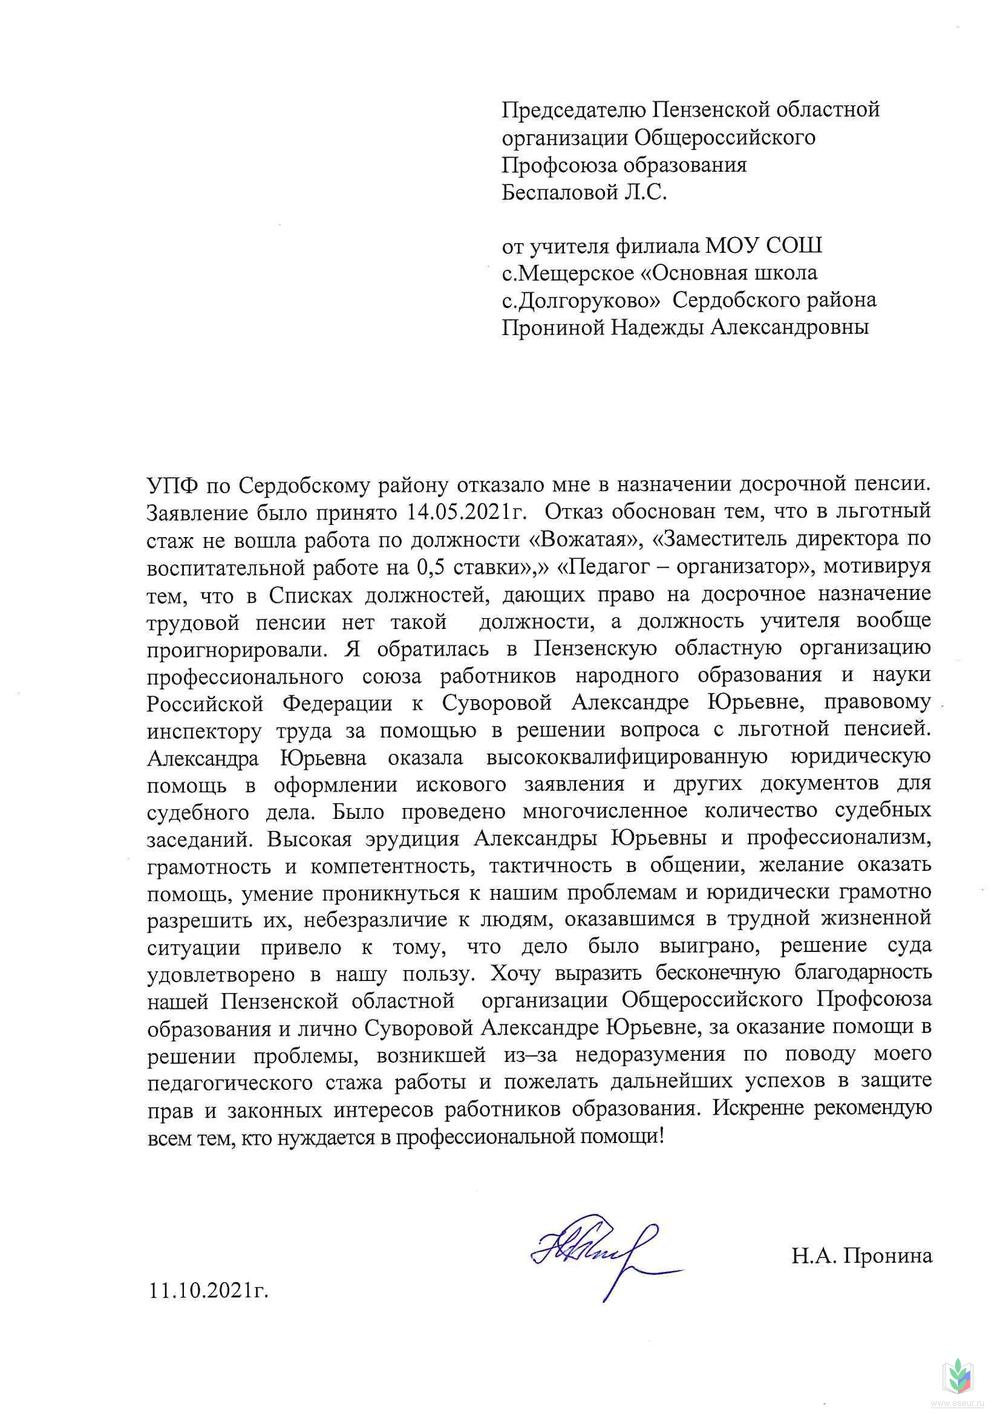 Сердобск письмо от 11_10_2021